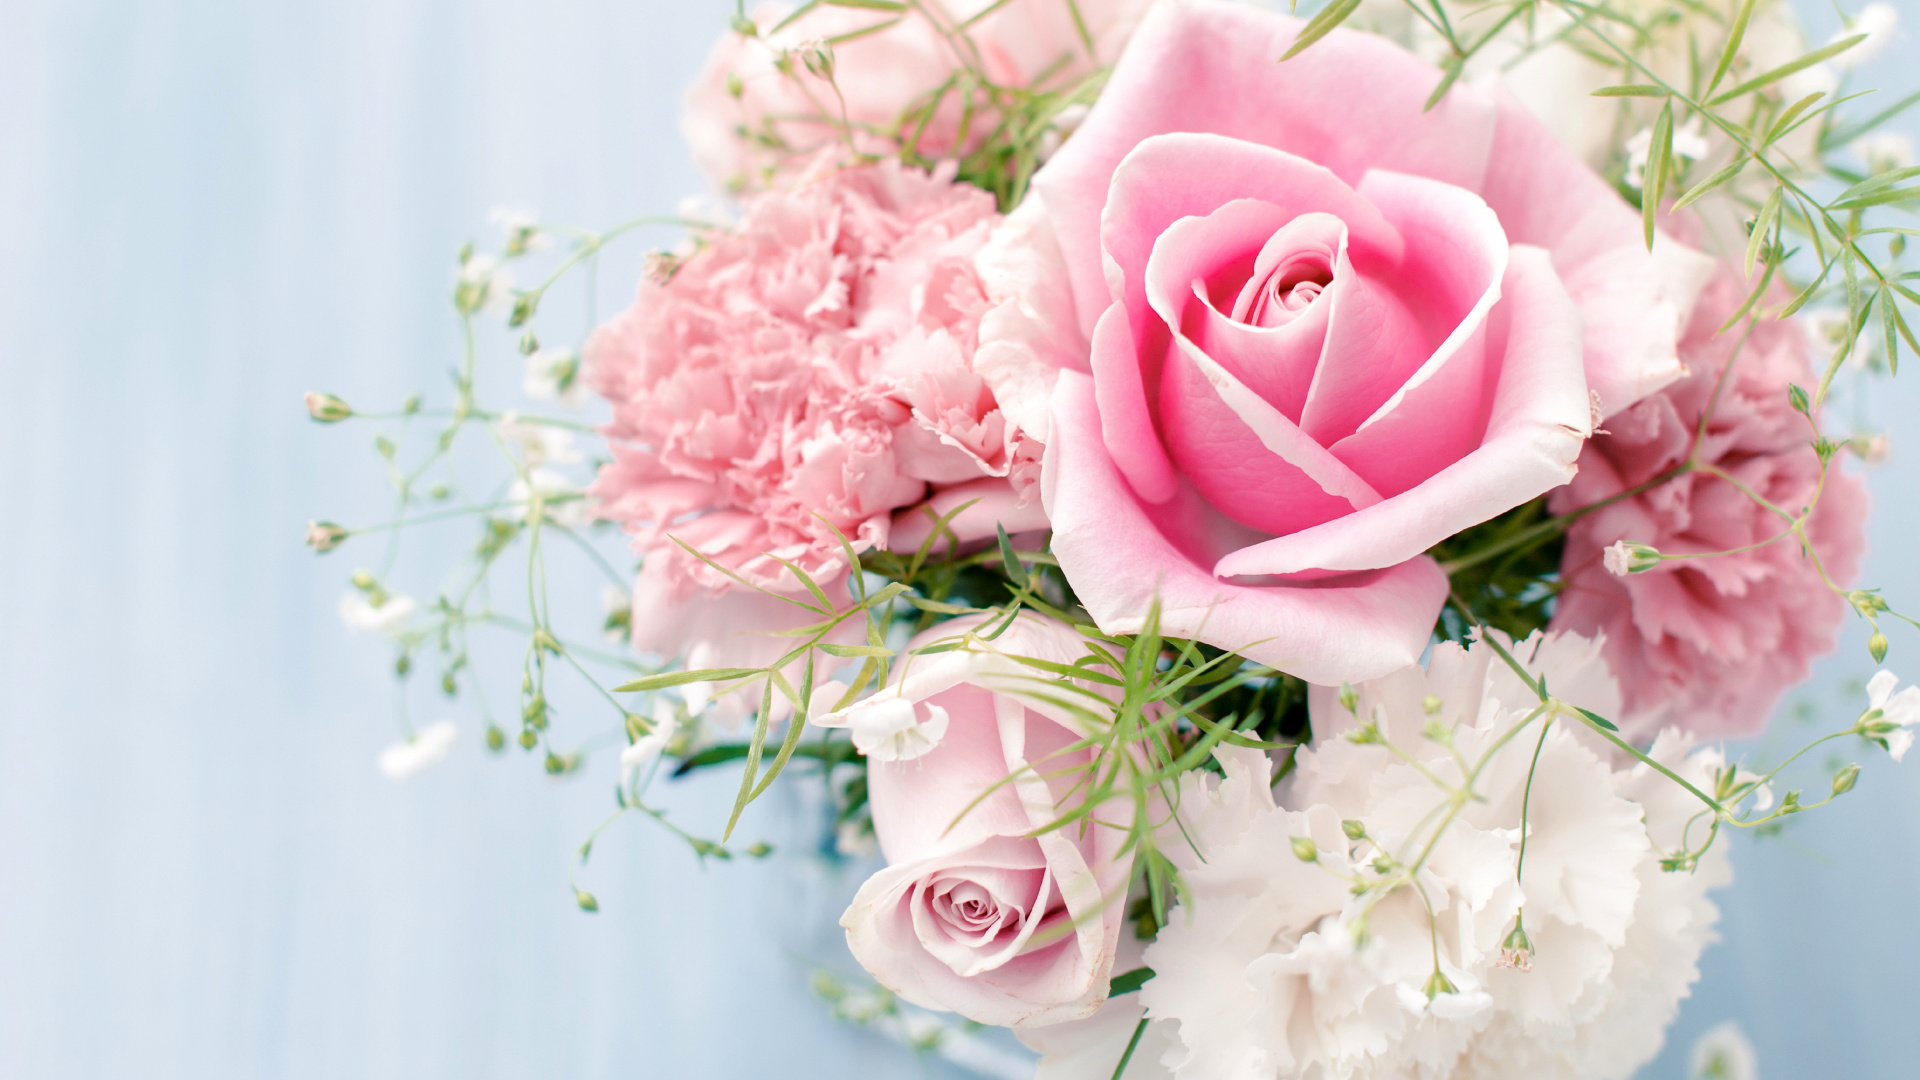 Обои Роза, цветочный букет, розовые цветы, розовый, сад роз в разрешении 1920x1080